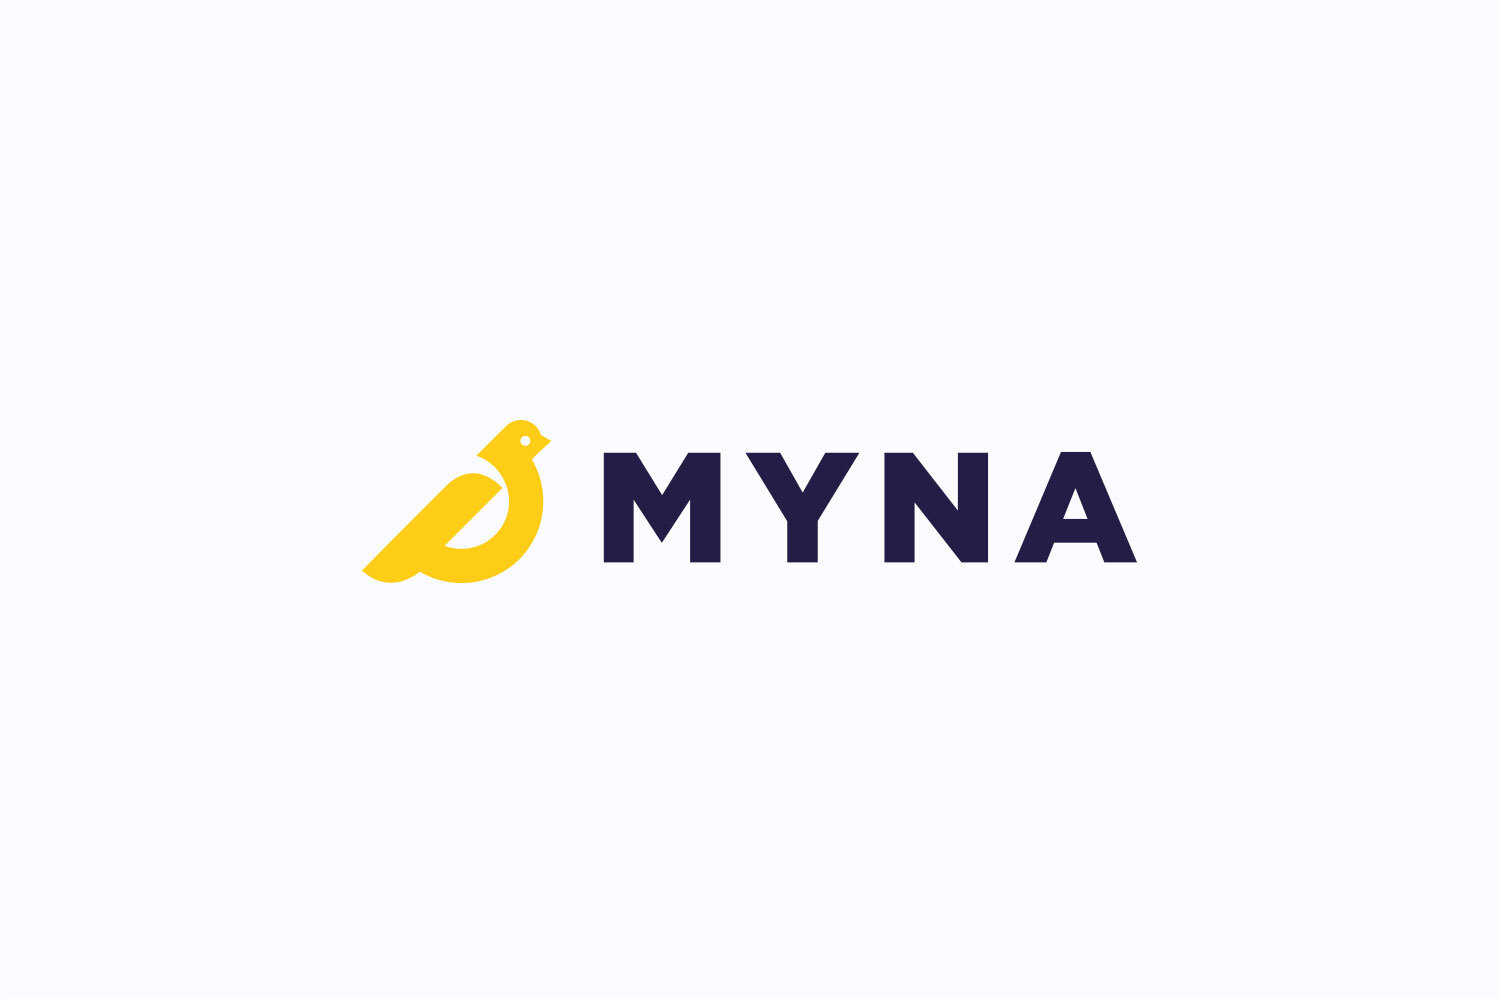 Myna logo, developed by Mighty